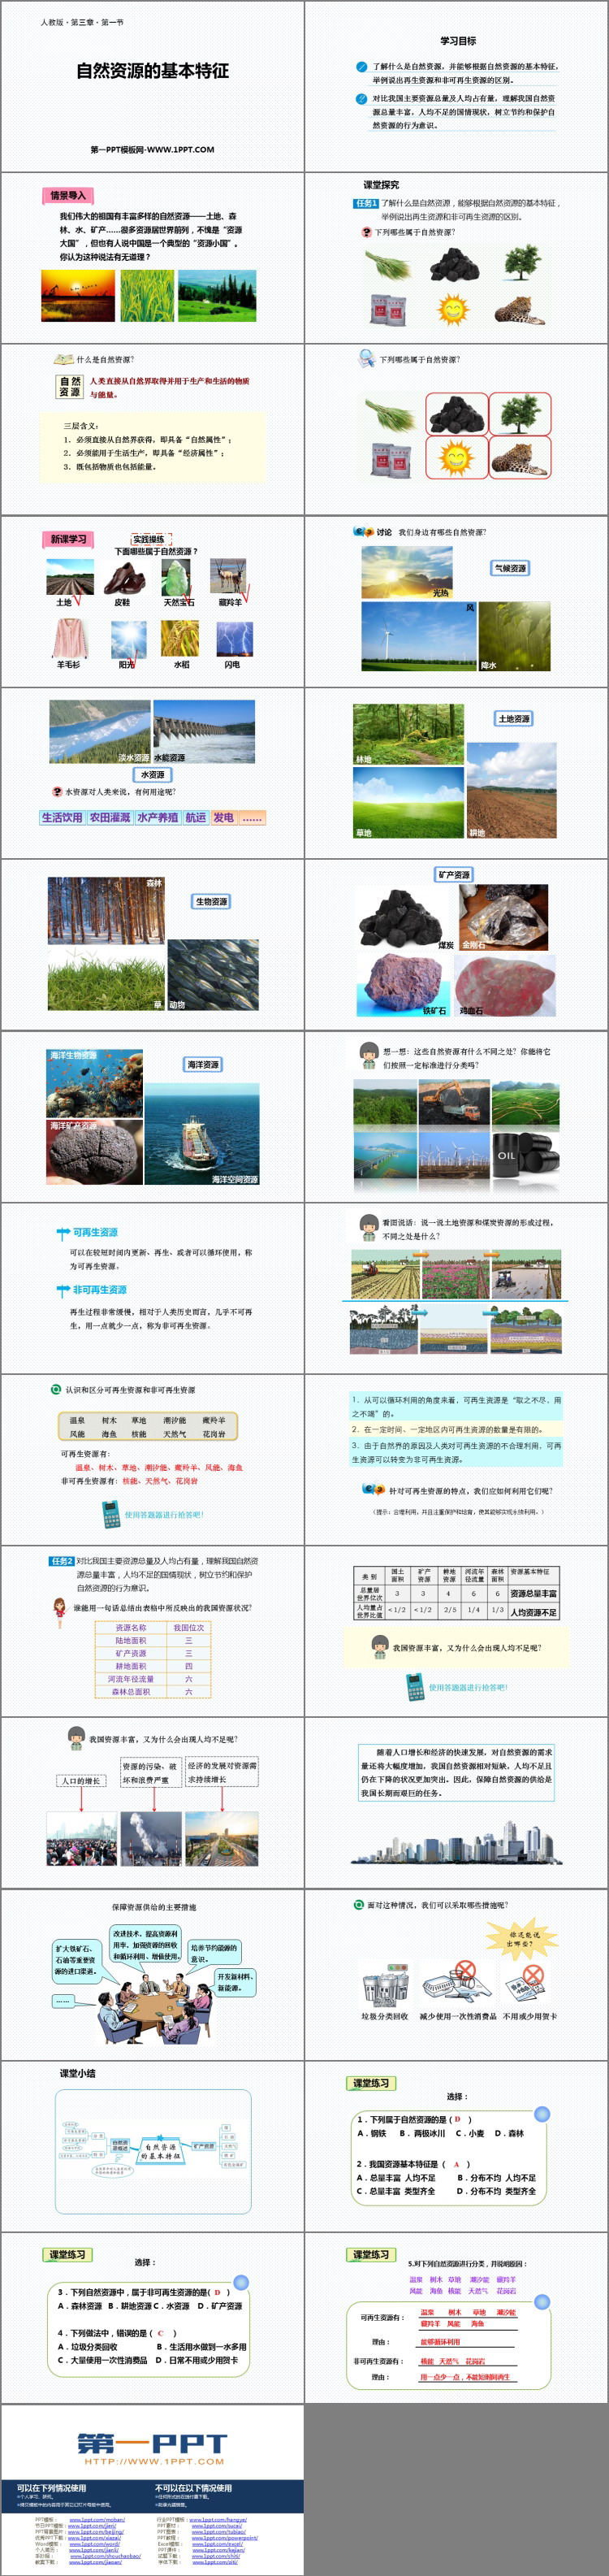 《自然资源的基本特征》中国的自然资源PPT教学课件-预览图02